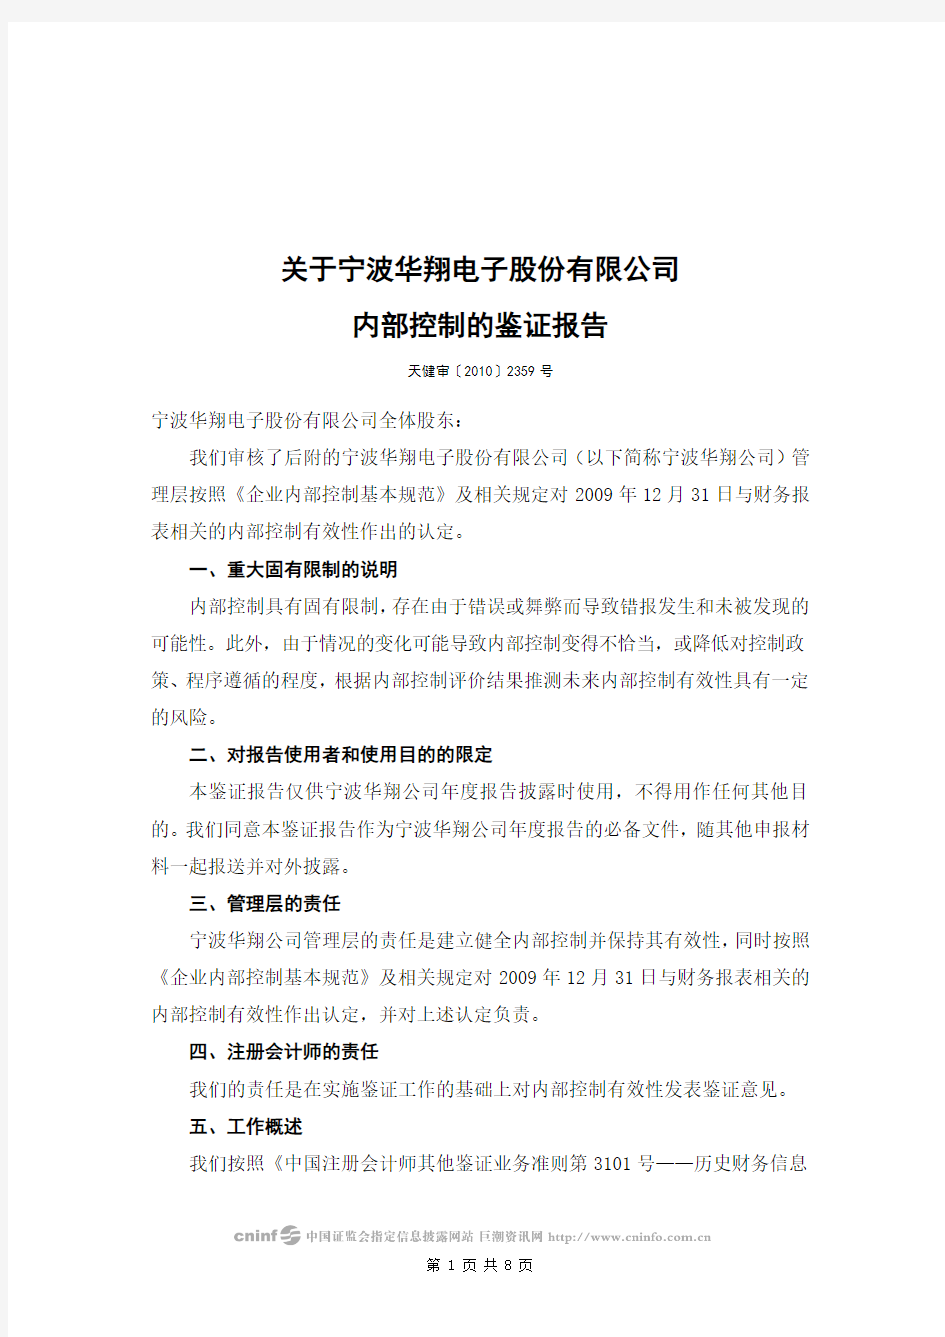 宁波华翔：关于公司内部控制的鉴证报告 2010-04-16